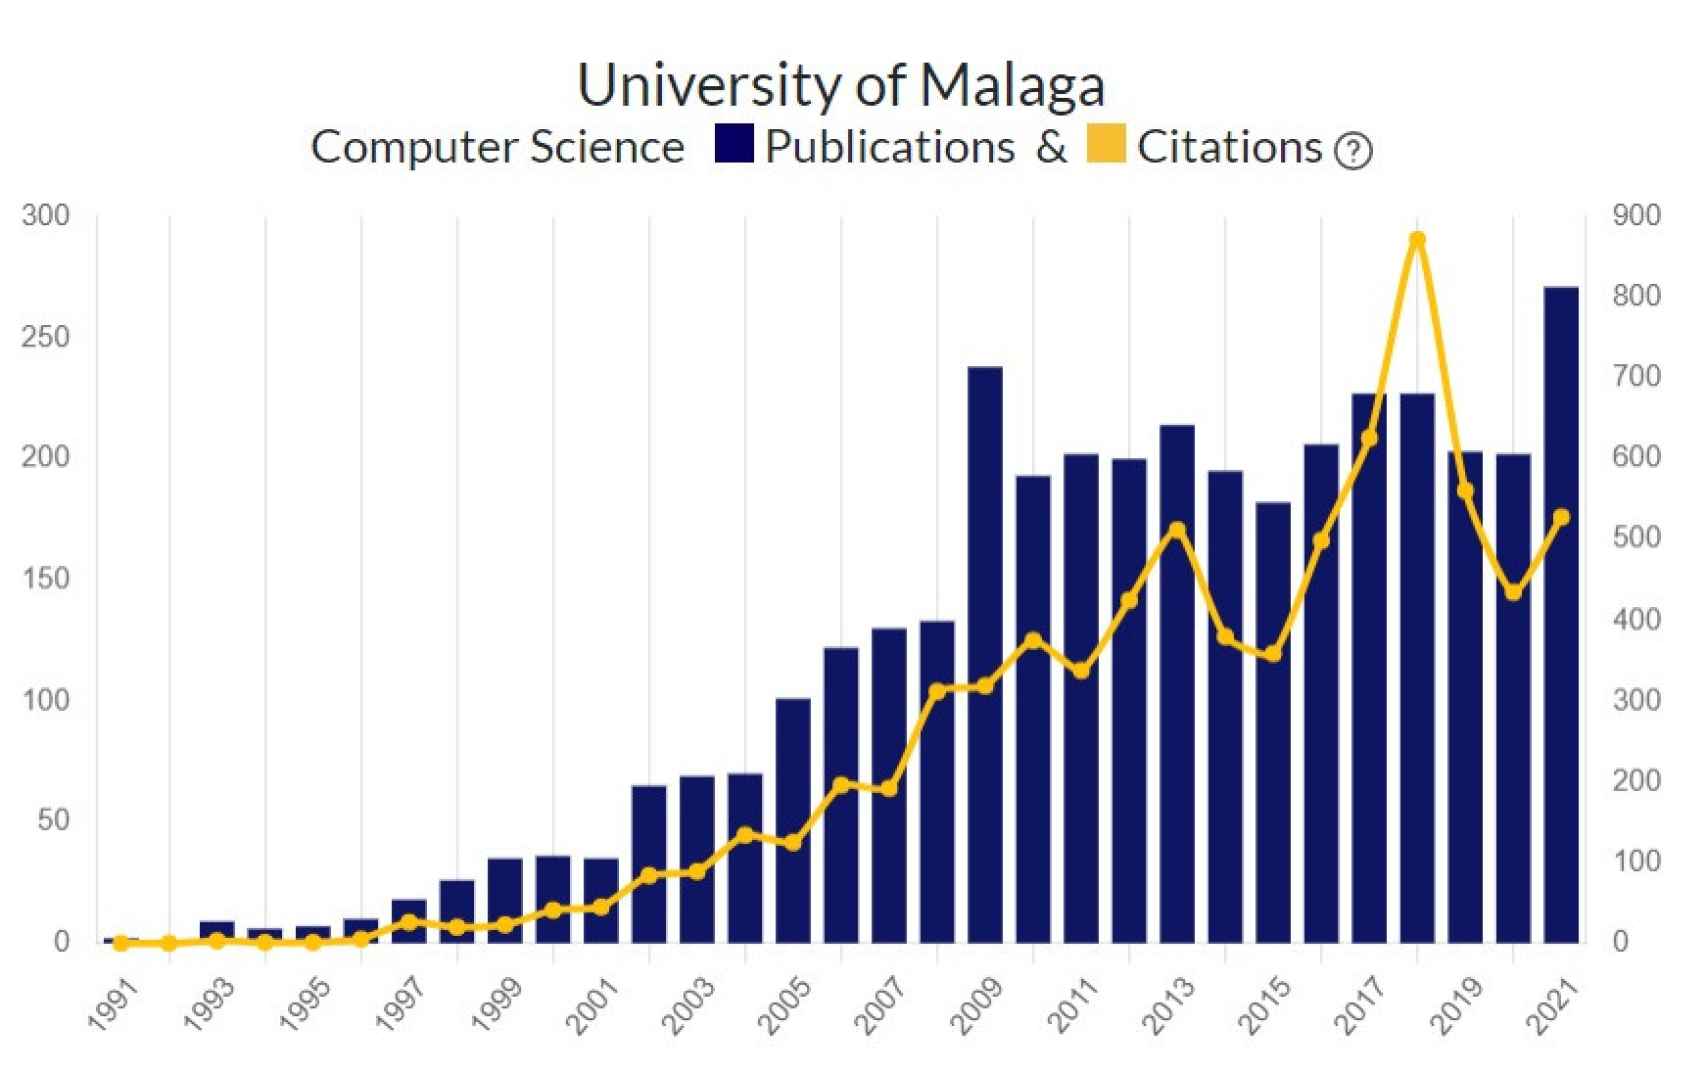 Publicaciones y citaciones sobre Ciencia de la Computación en la Universidad de Málaga.